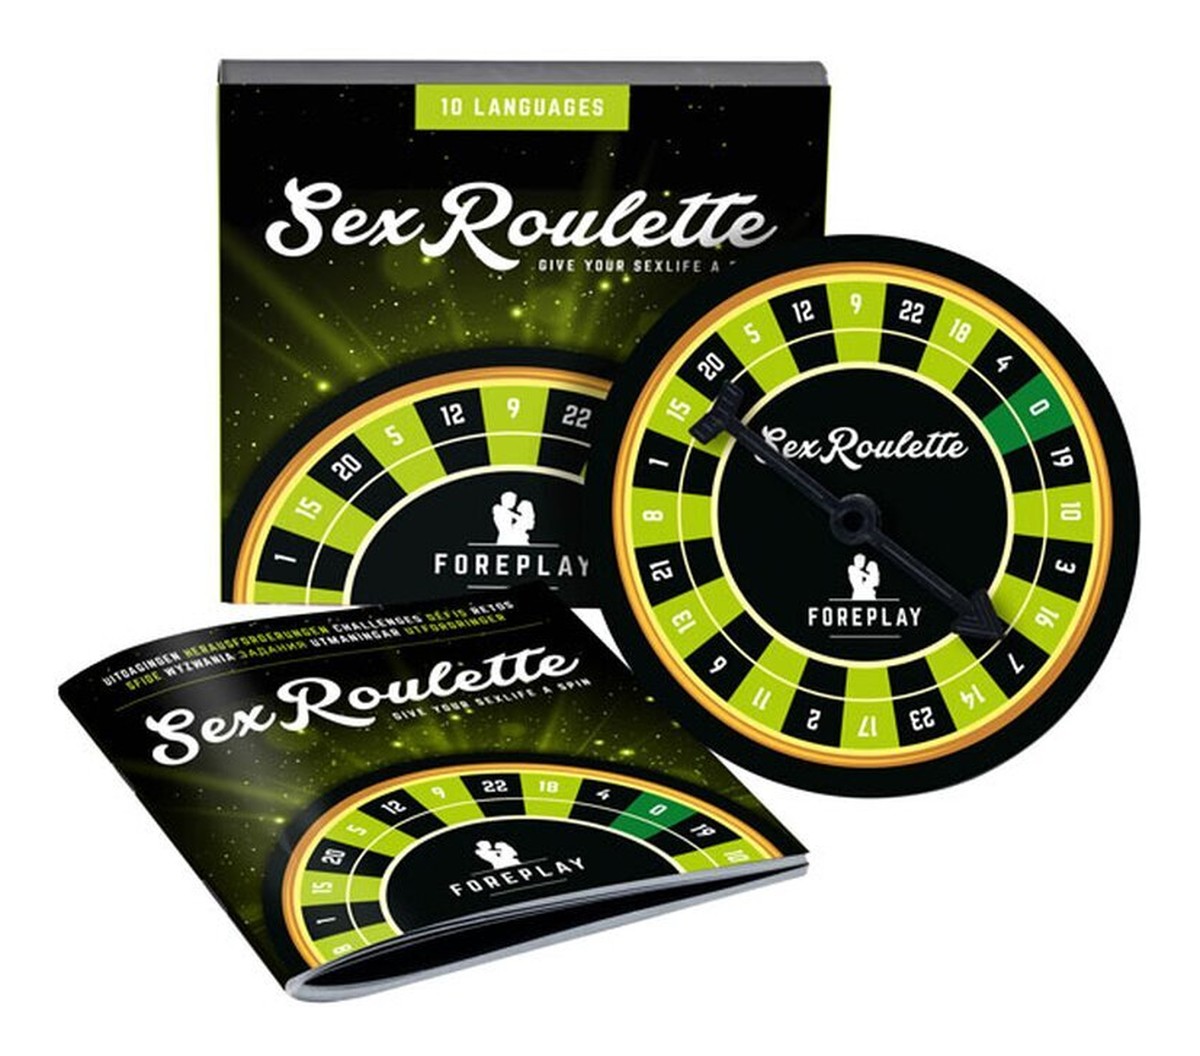 Sex roulette foreplay wielojęzyczna gra erotyczna